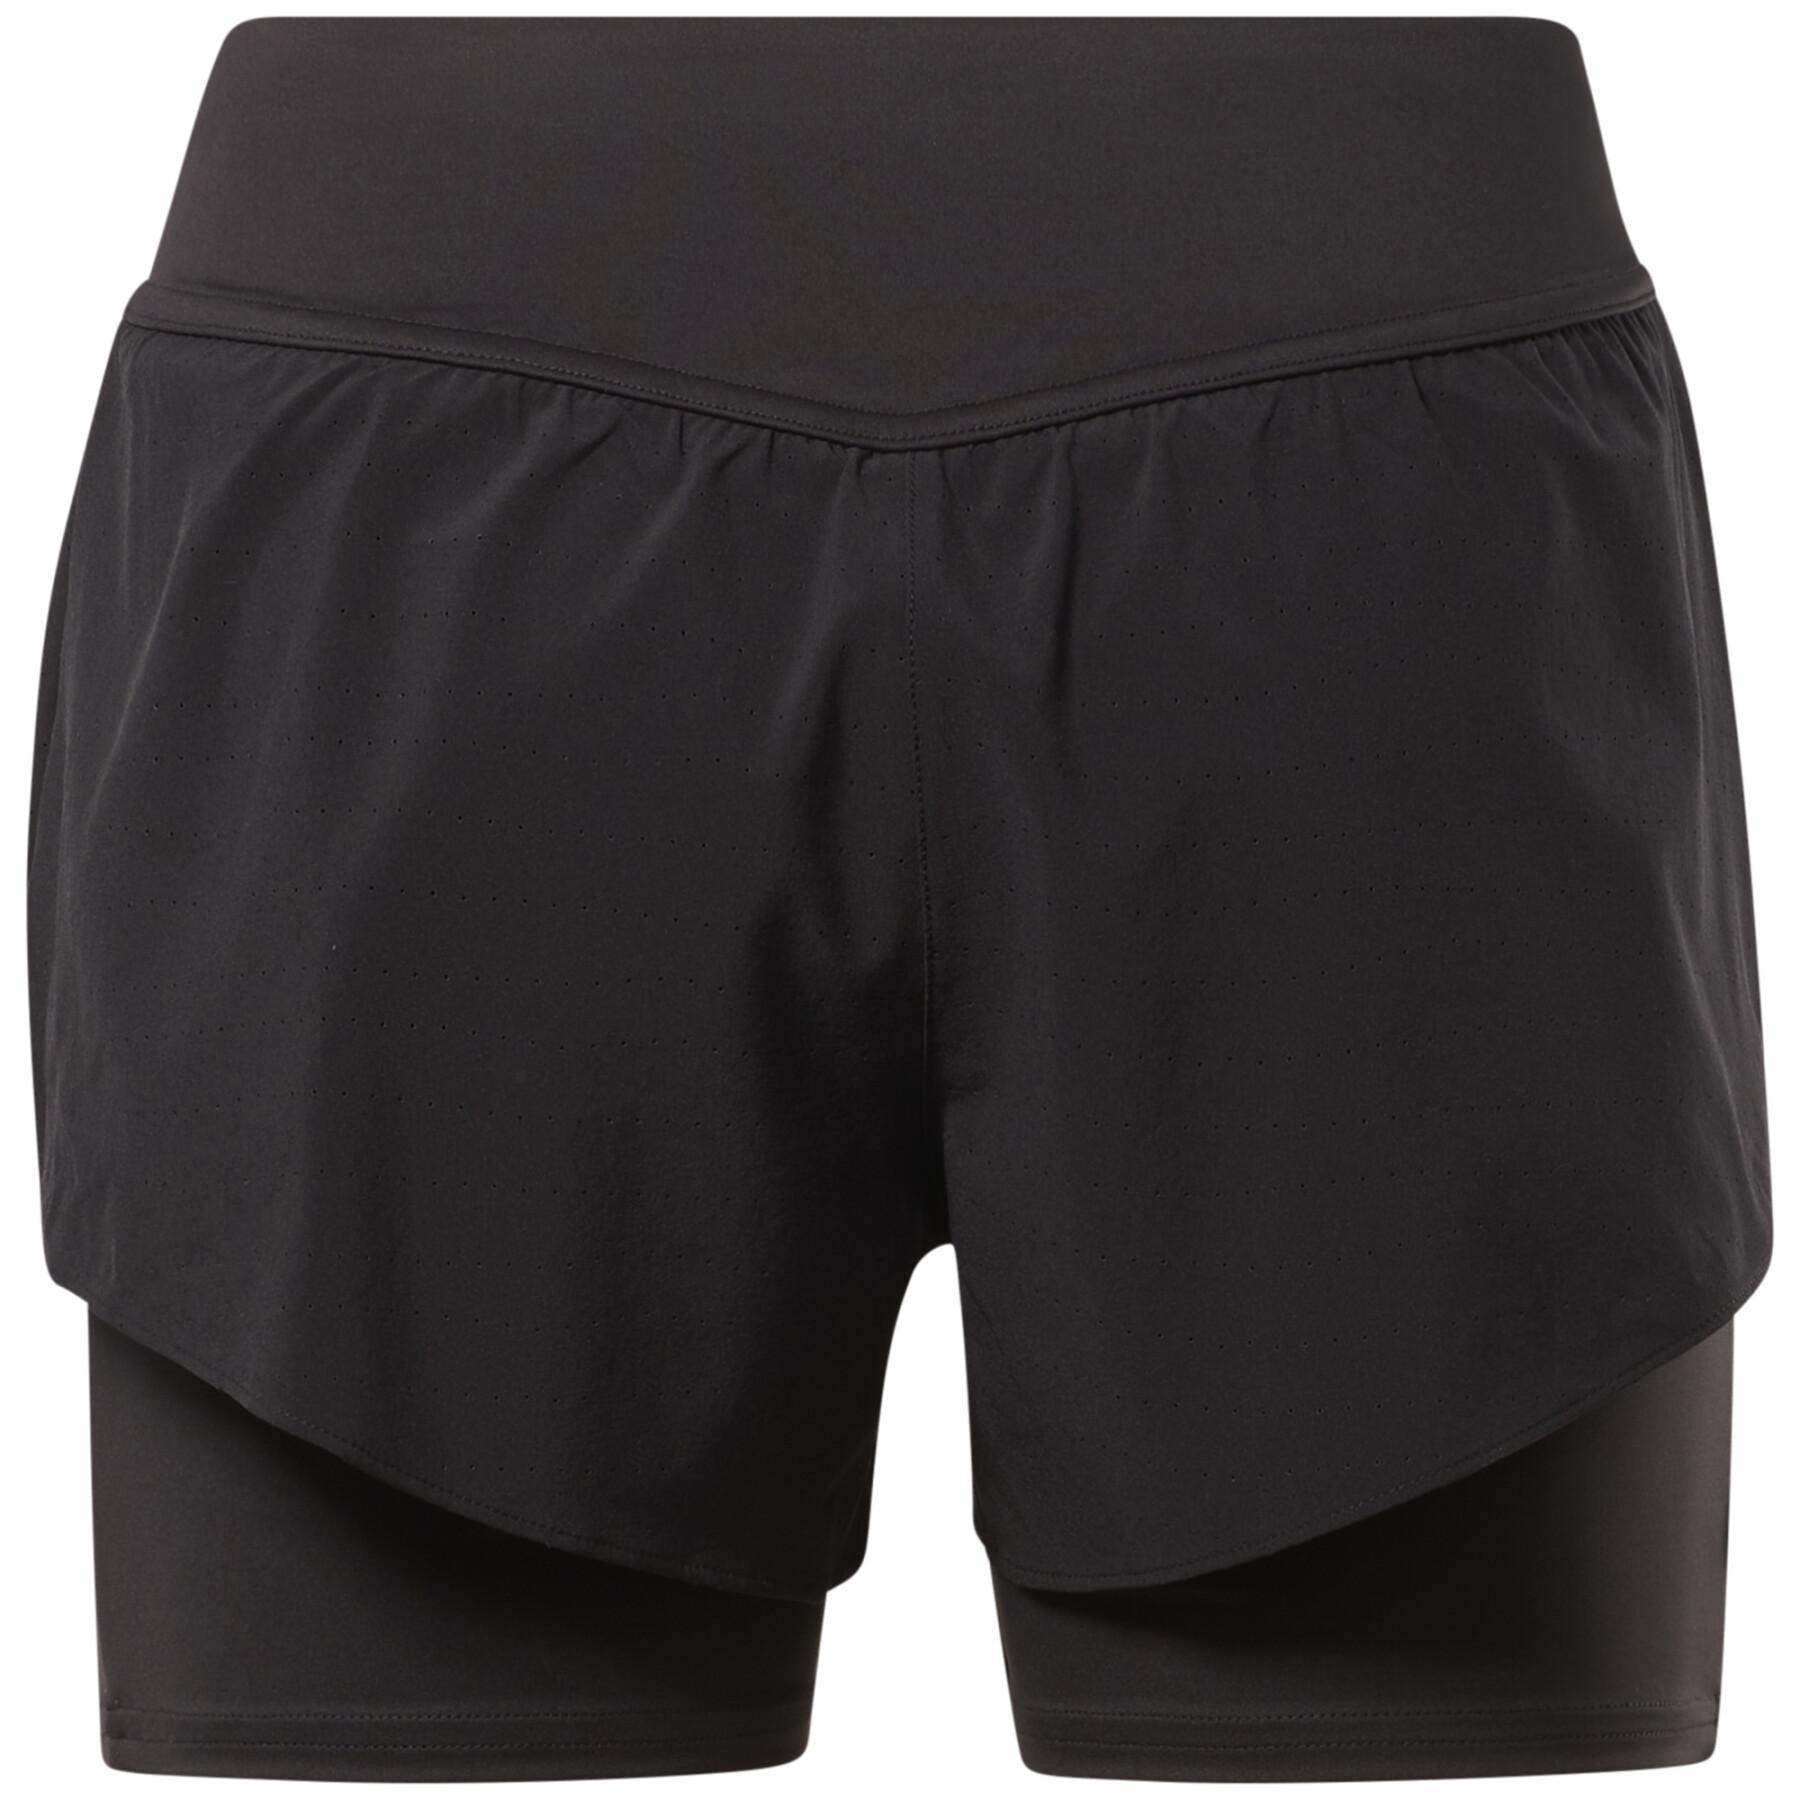 Women's shorts Reebok Epic 2-In-1